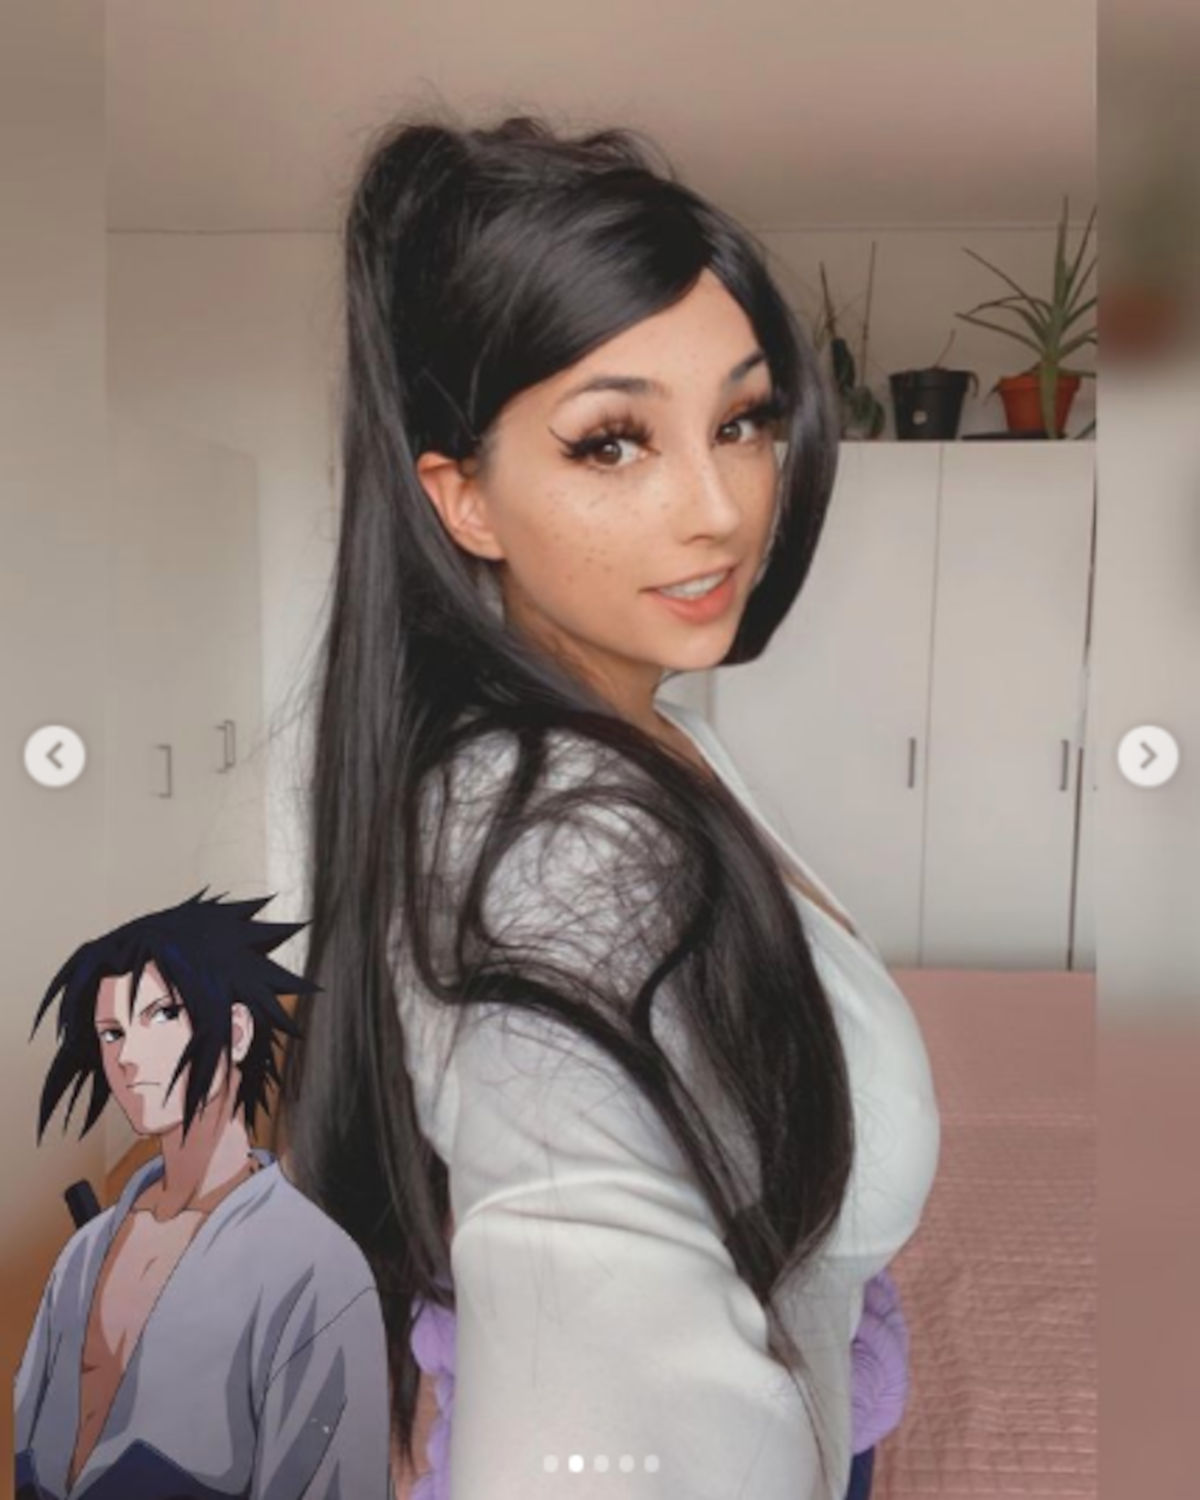 Naruto Shippuden: Sasuke cambia de sexo de nuevo